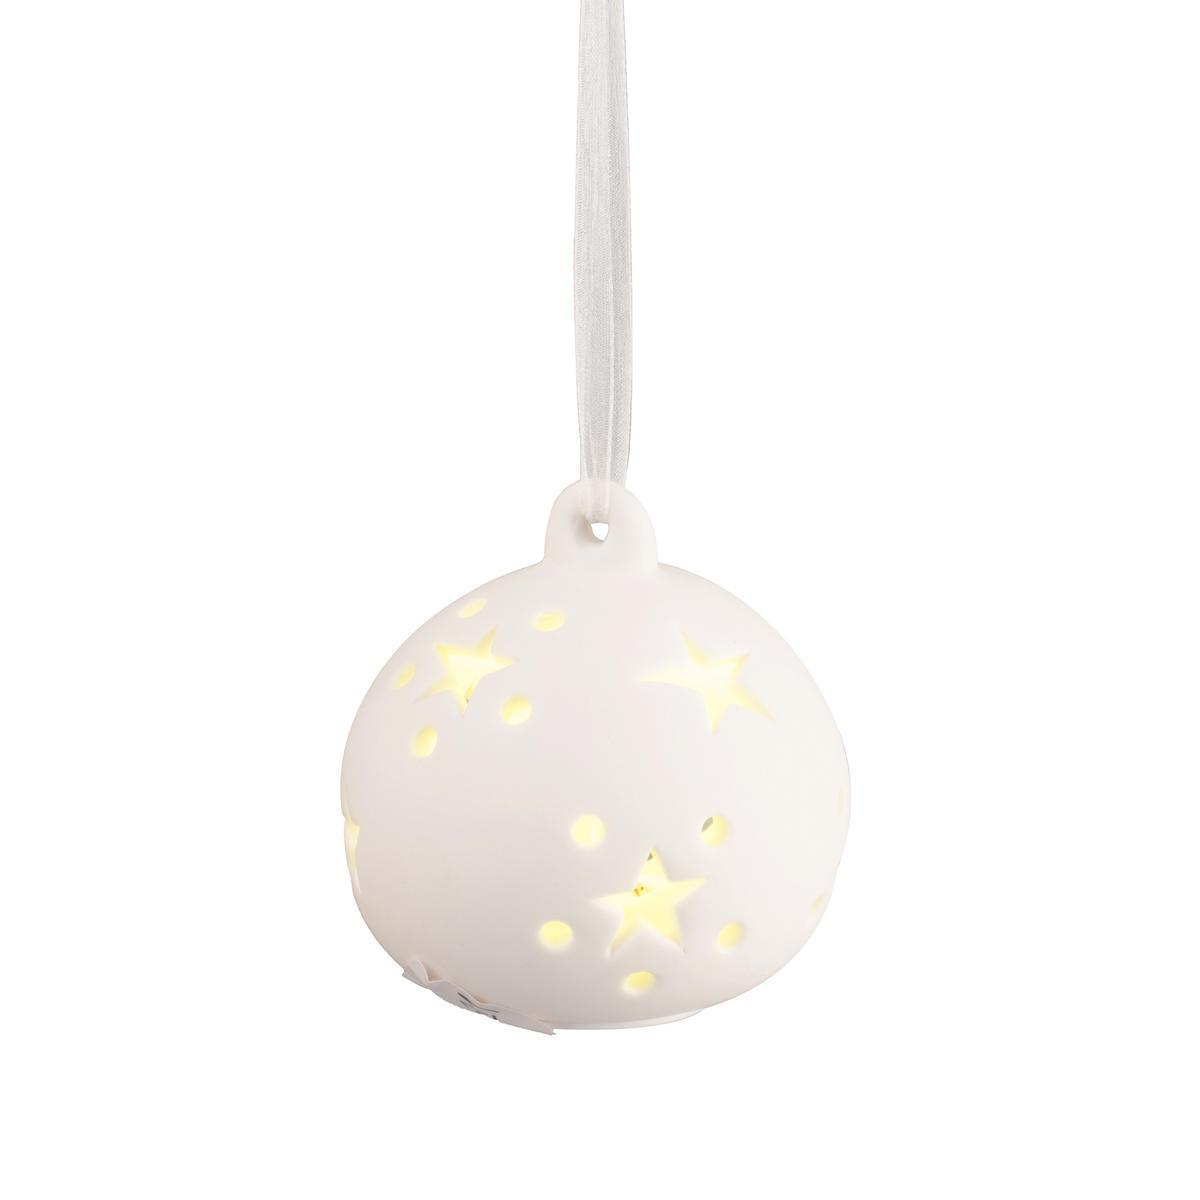 Suspension boule lumineuse - Porcelaine - Ø 6,5 cm - Blanc